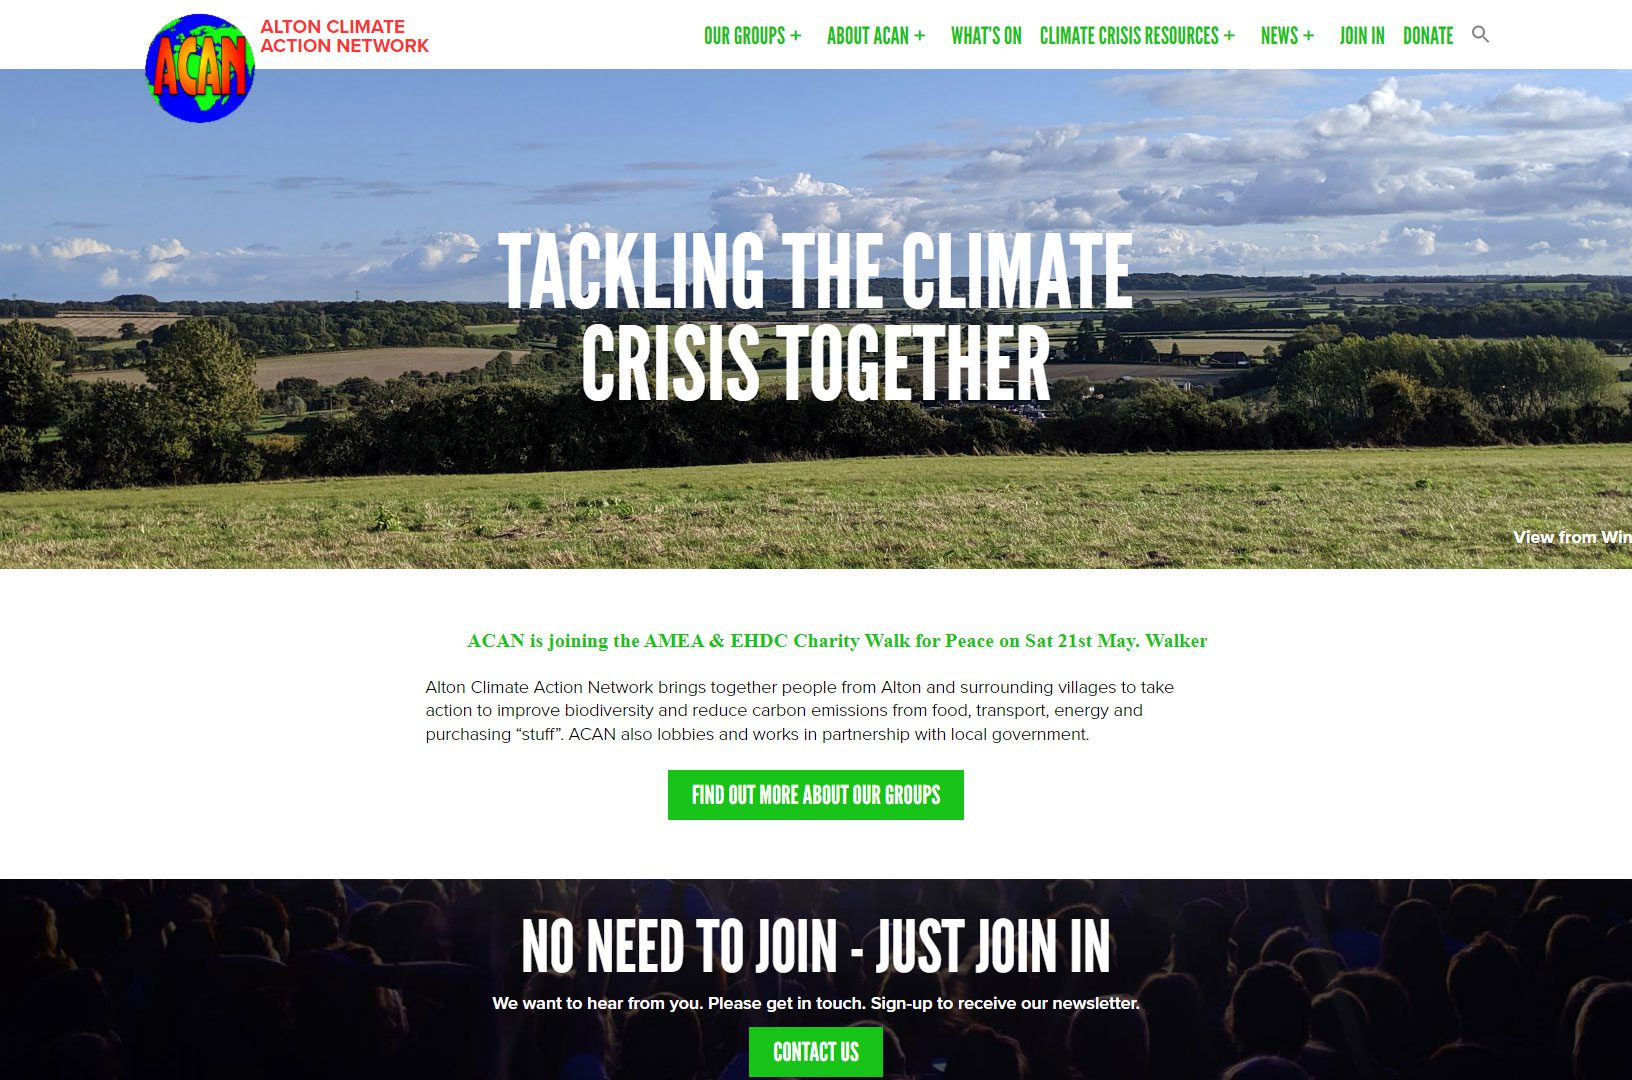 Alton Climate Action Network